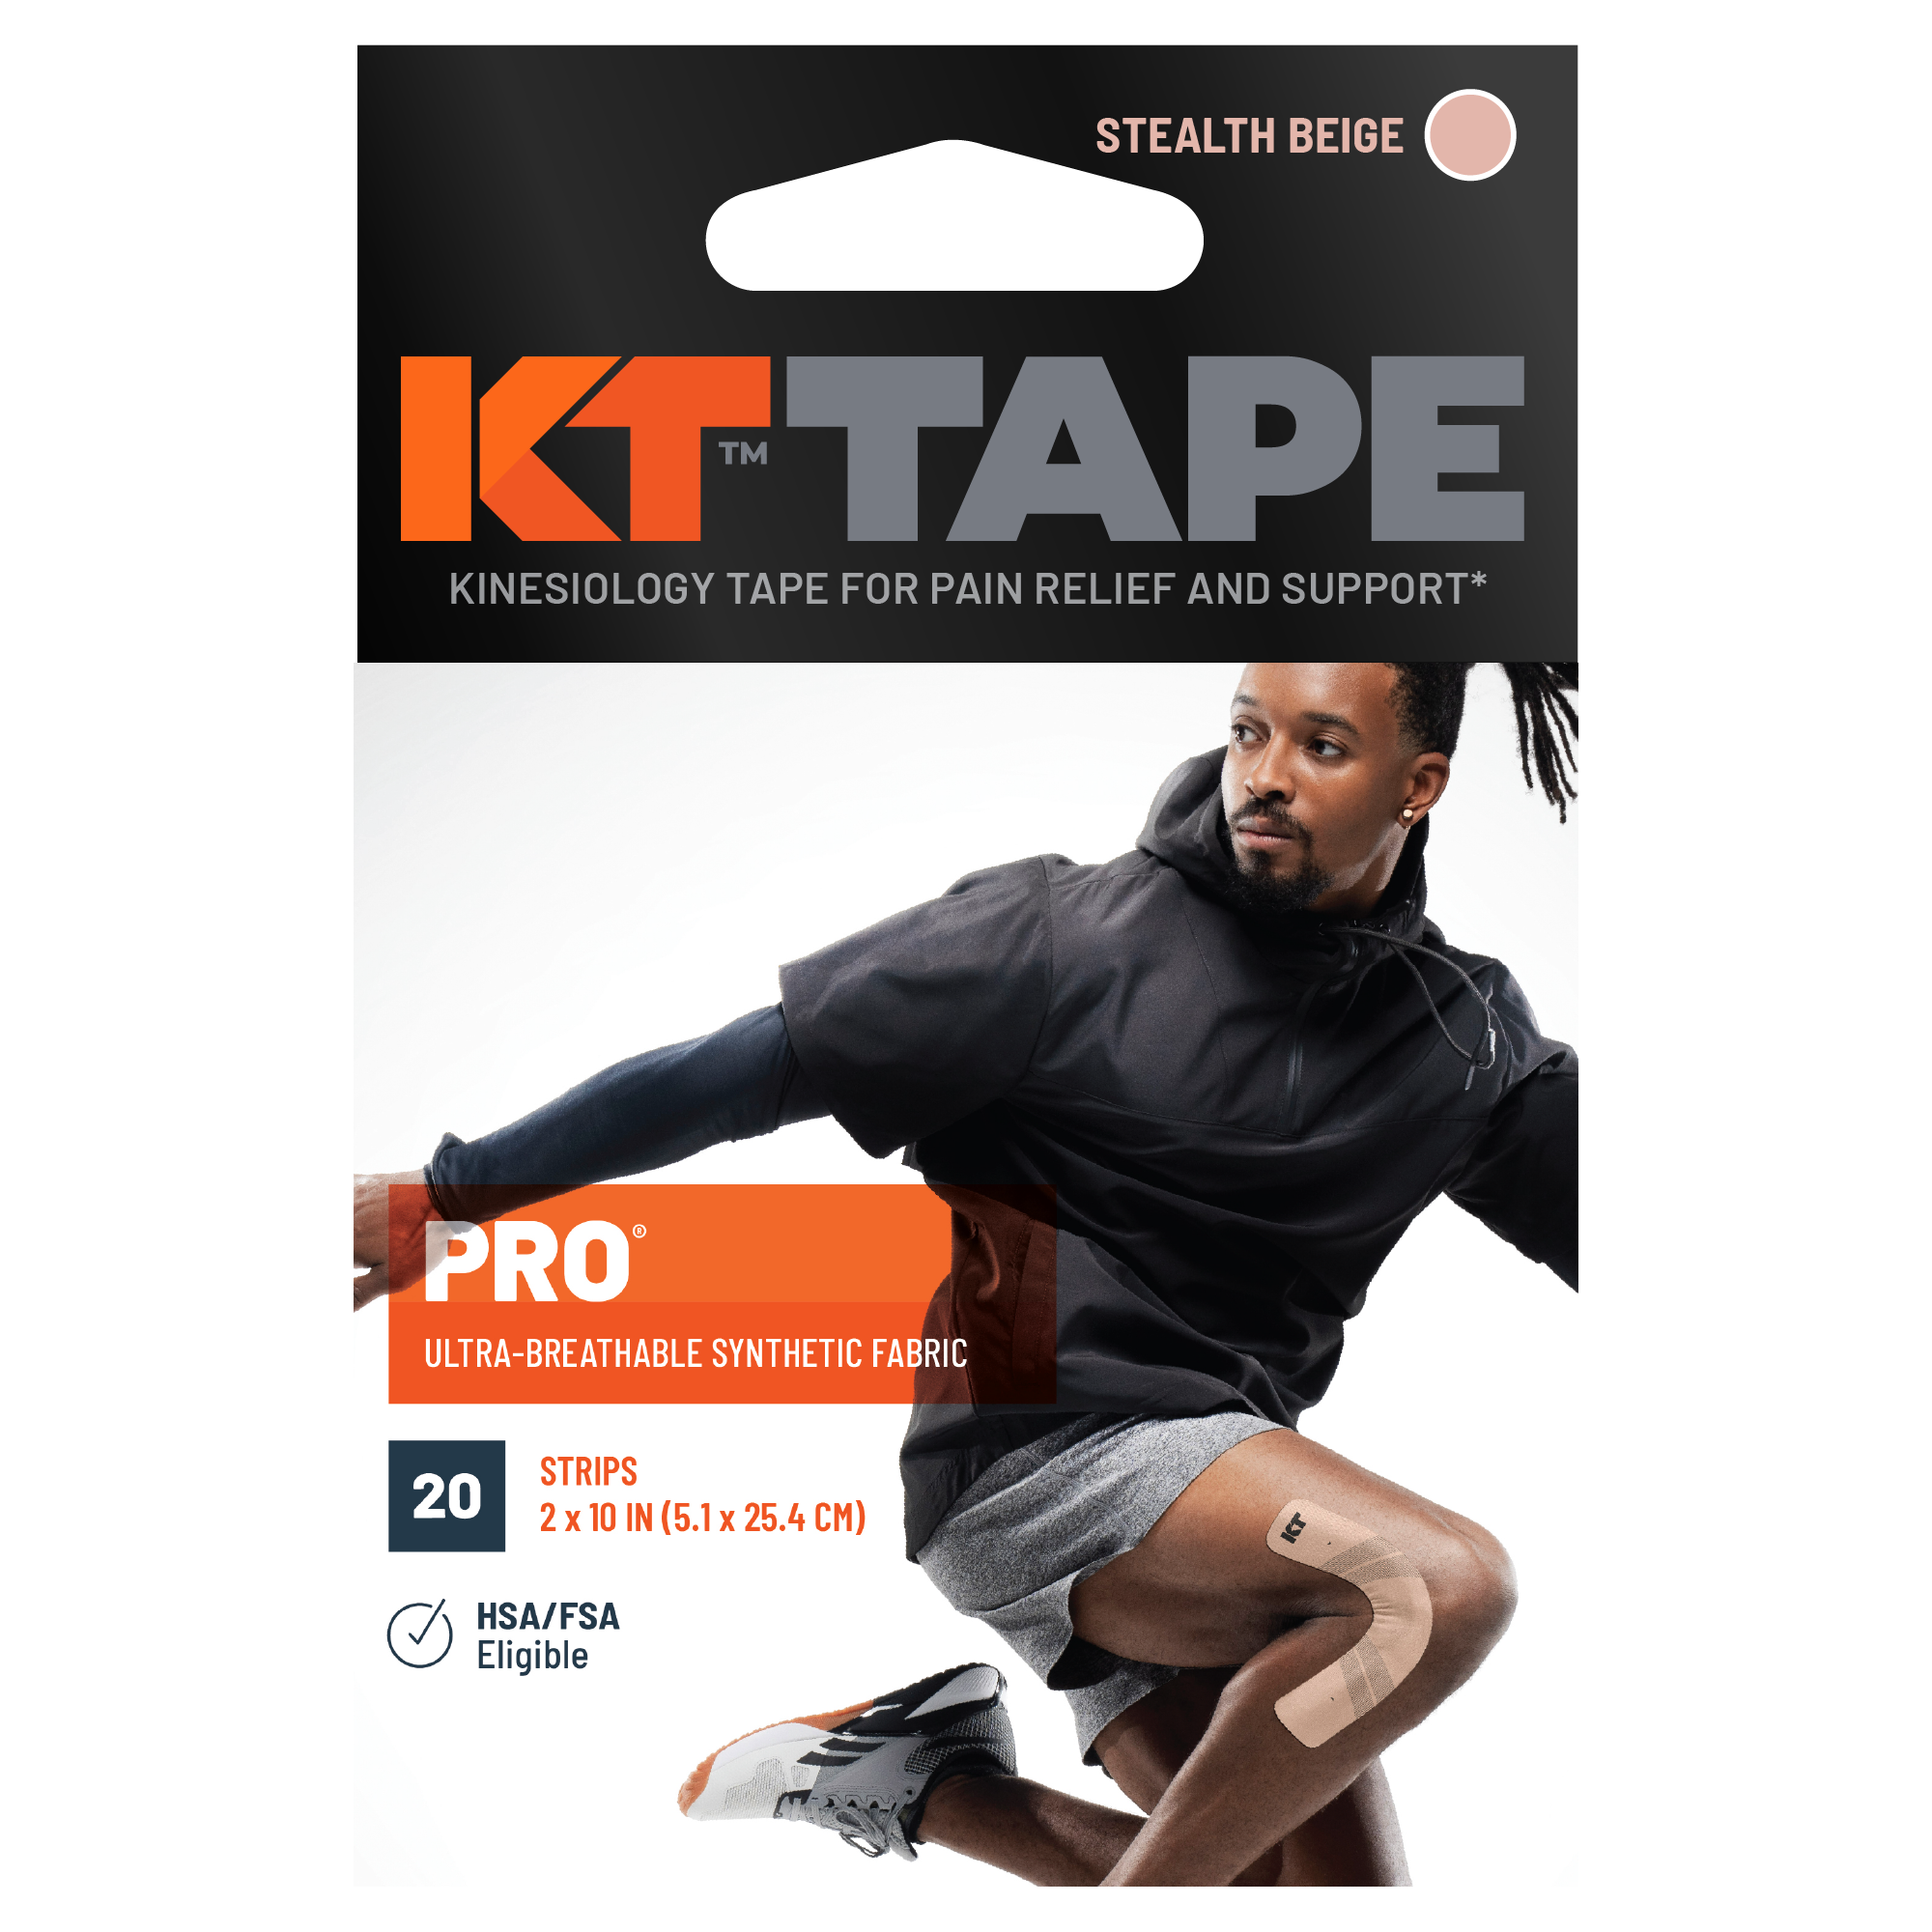 KT Tape Pro packaging#color_stealth-beige